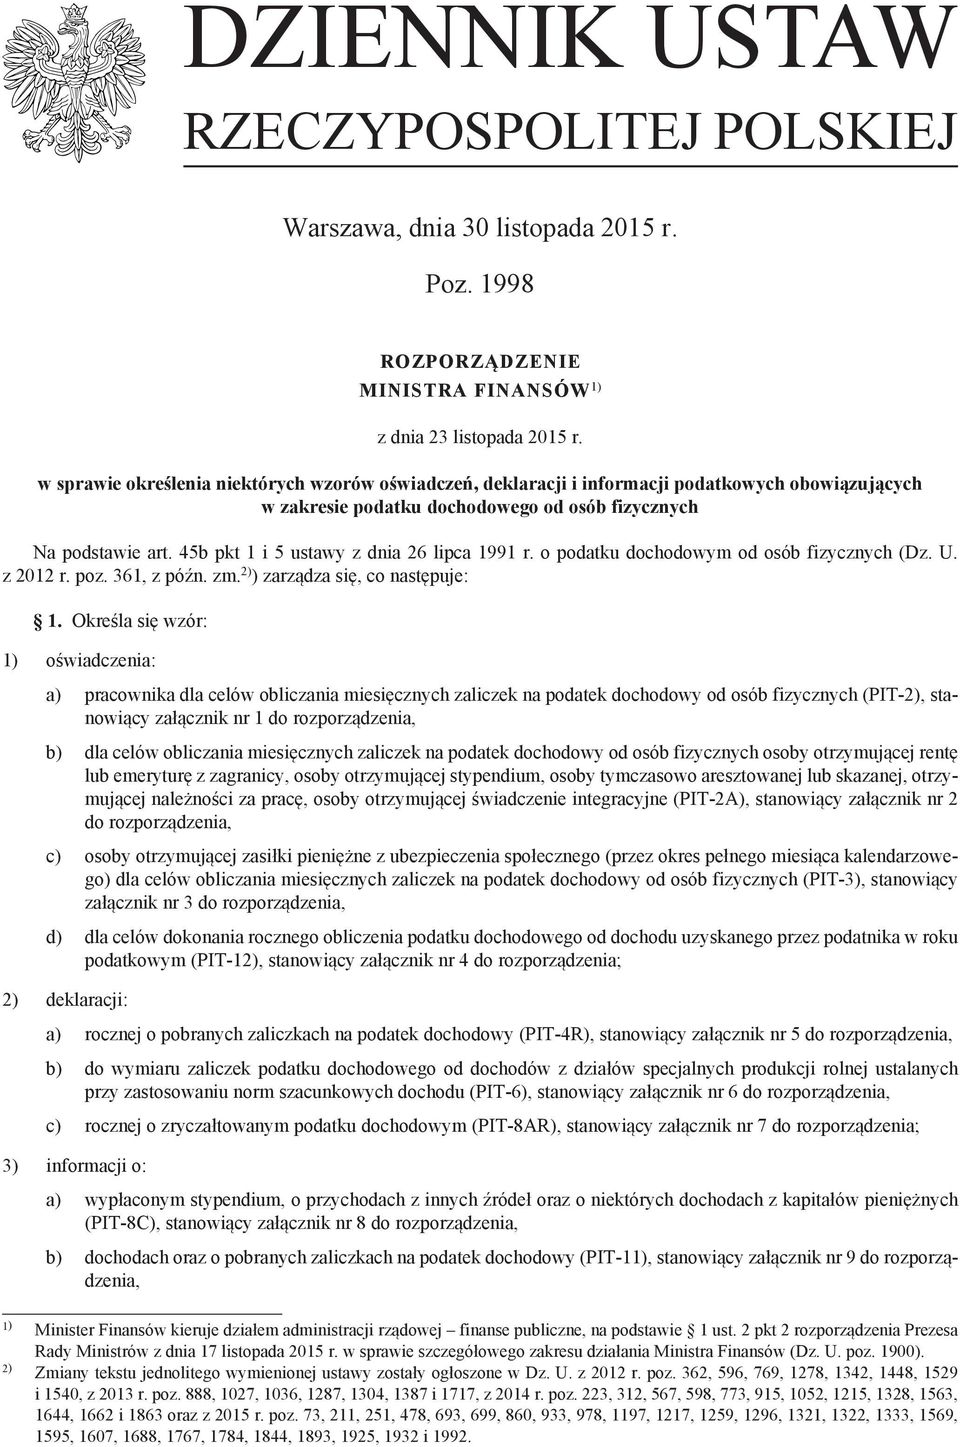 45b pkt 1 i 5 ustawy z dnia 26 lipca 1991 r. o podatku dochodowym od osób fizycznych (Dz. U. z 2012 r. poz. 361 z późn. zm. 2) ) zarządza się co następuje: 1.